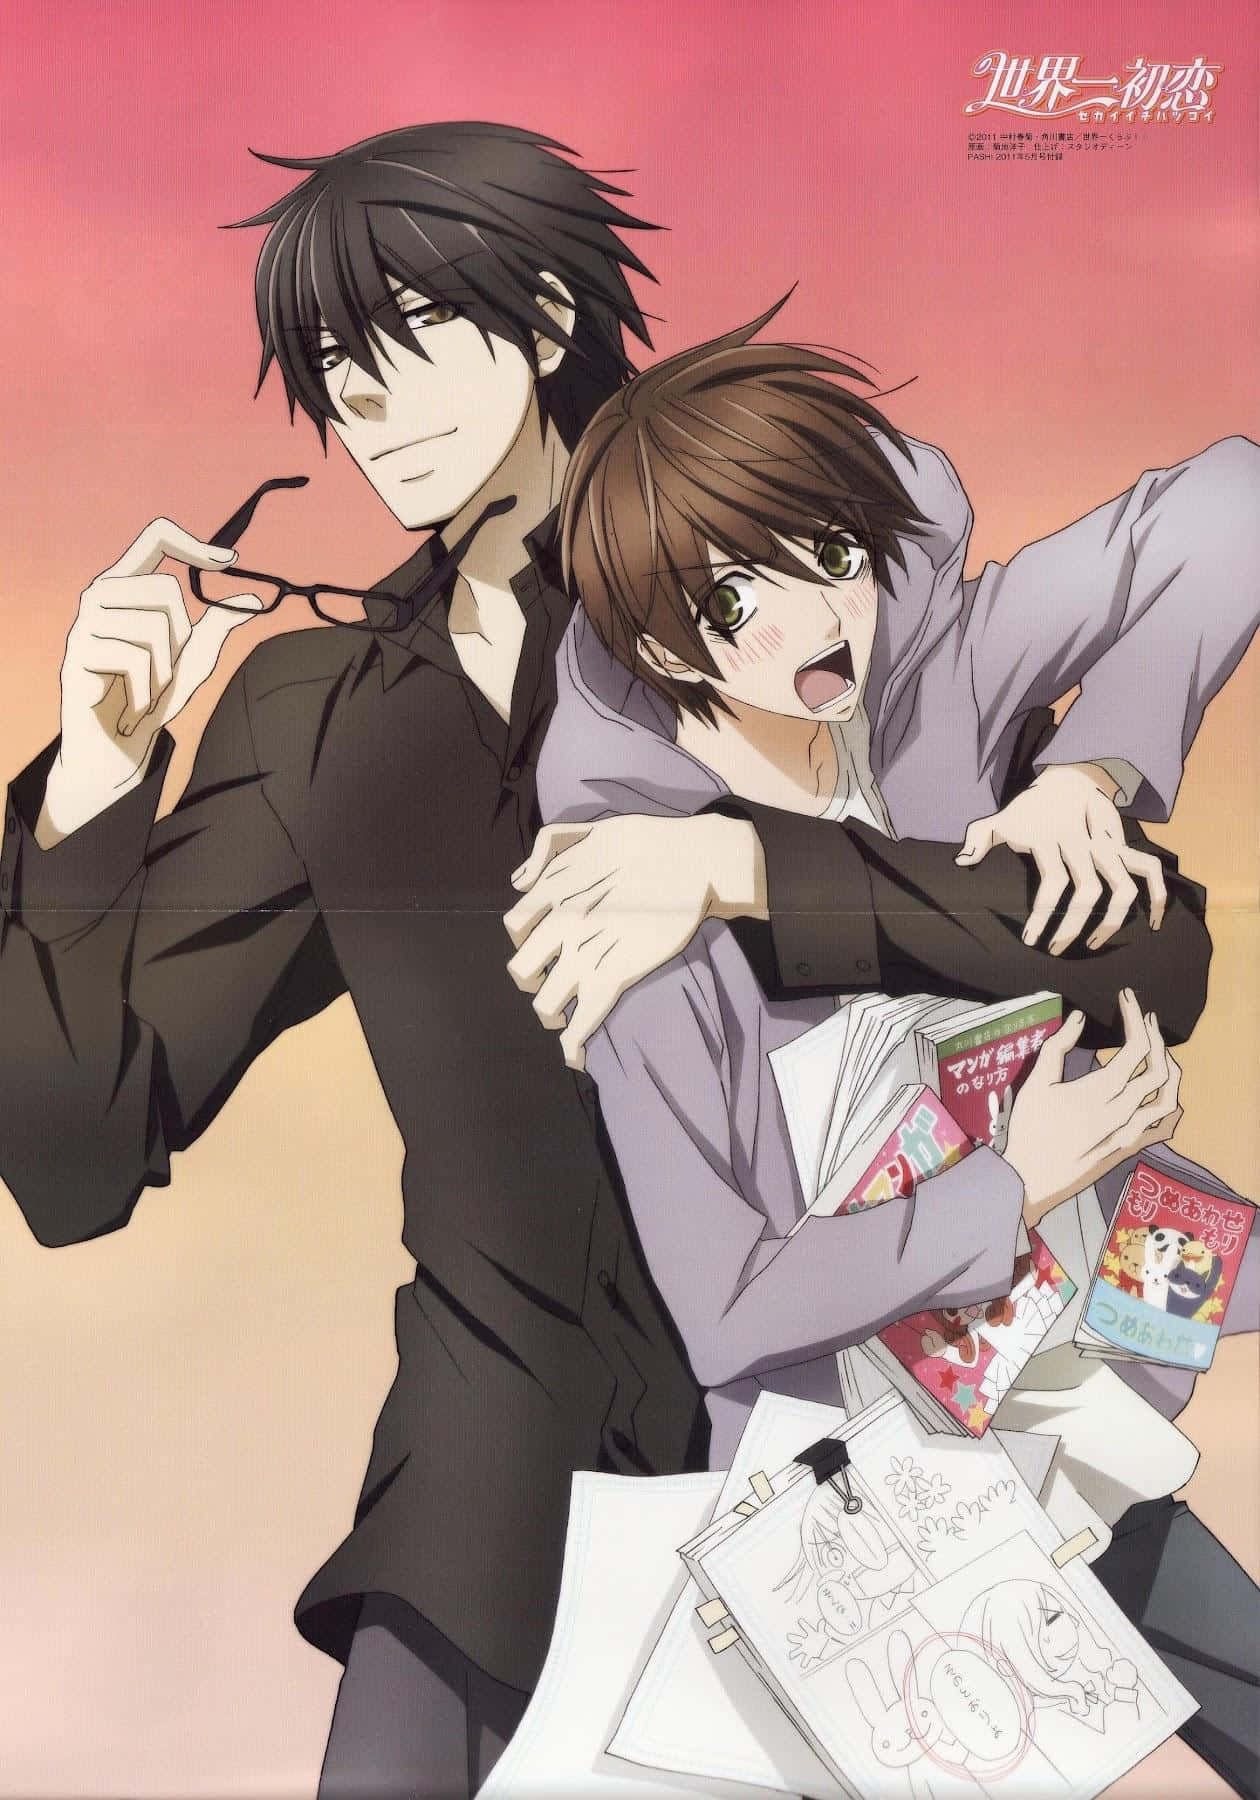 Godendodi Un Momento Di Amore Profondo, Questi Due Personaggi Di Anime Gay Si Abbracciano Romanticamente. Sfondo